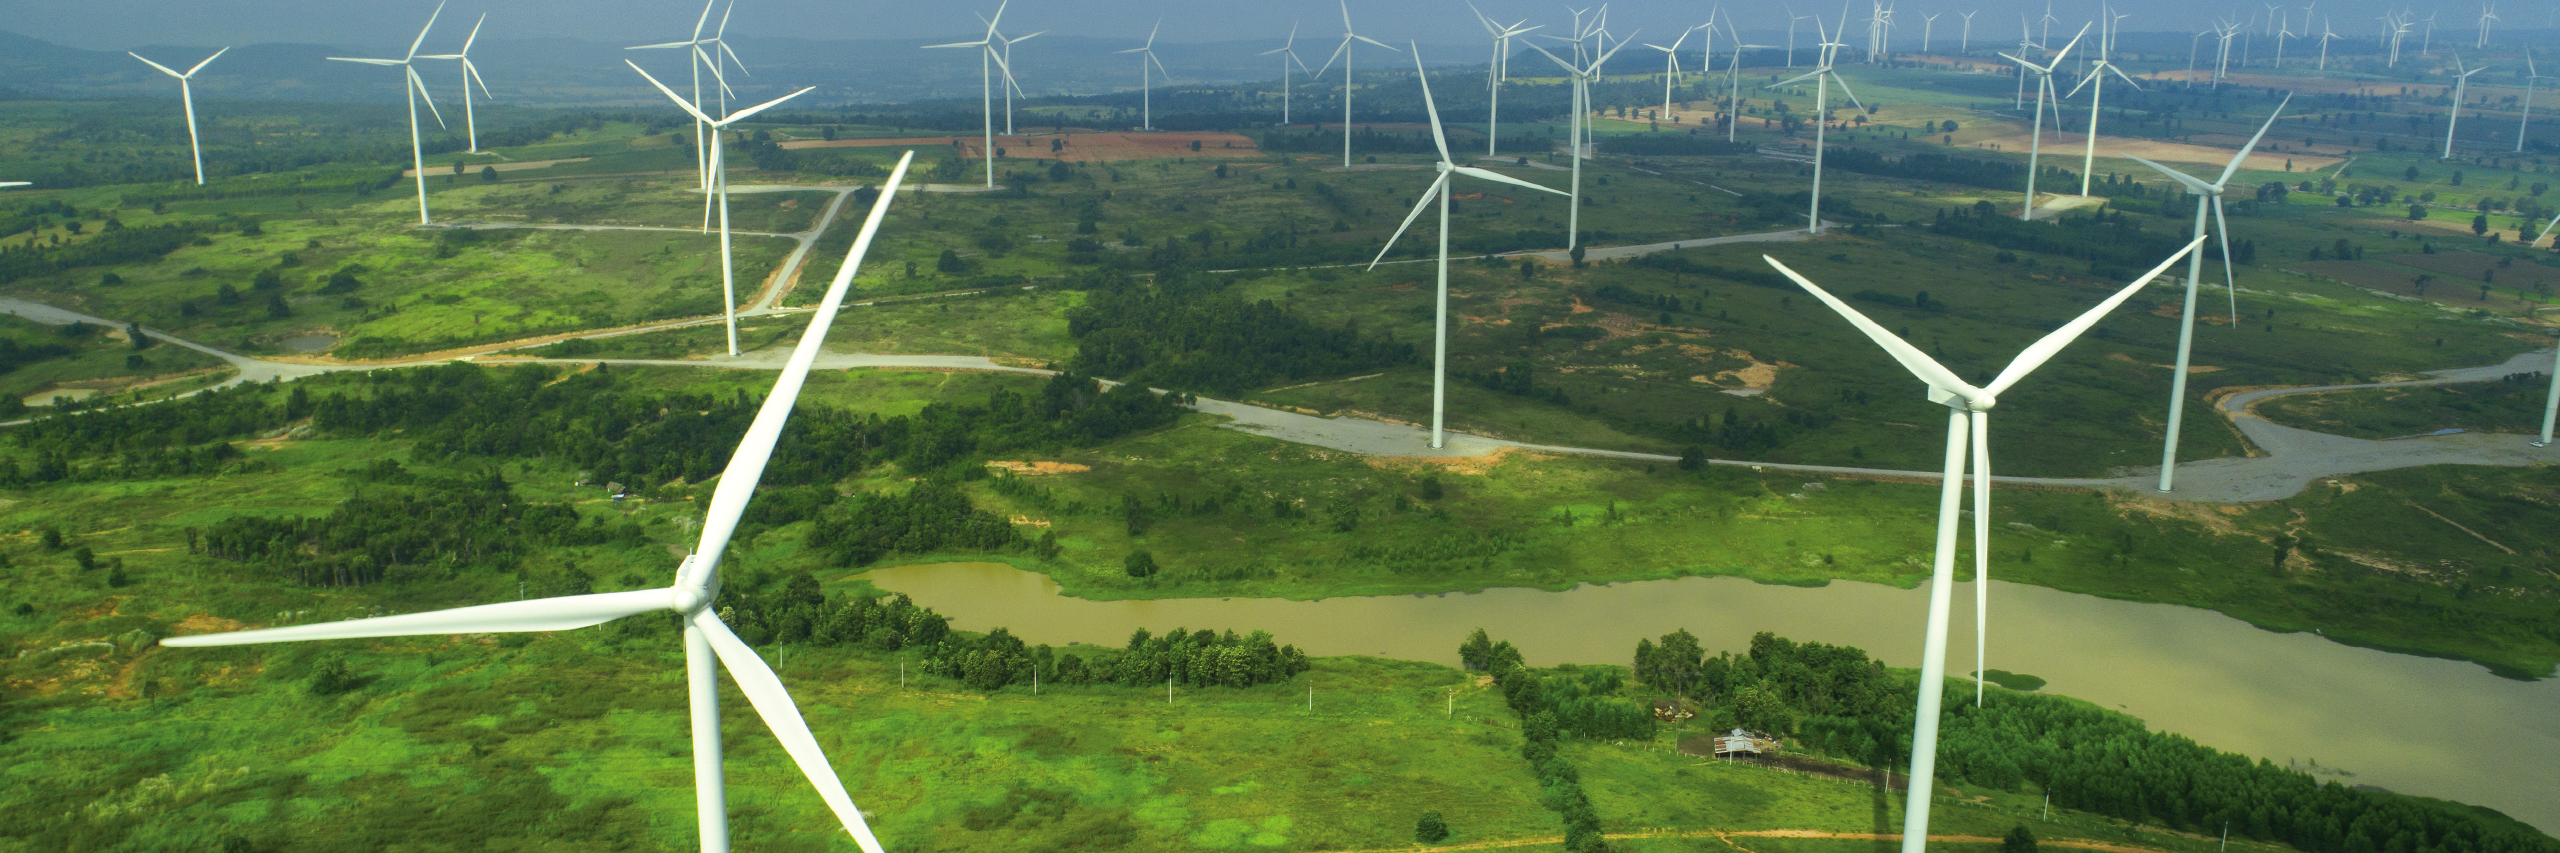 Wind turbines in a green wind farm